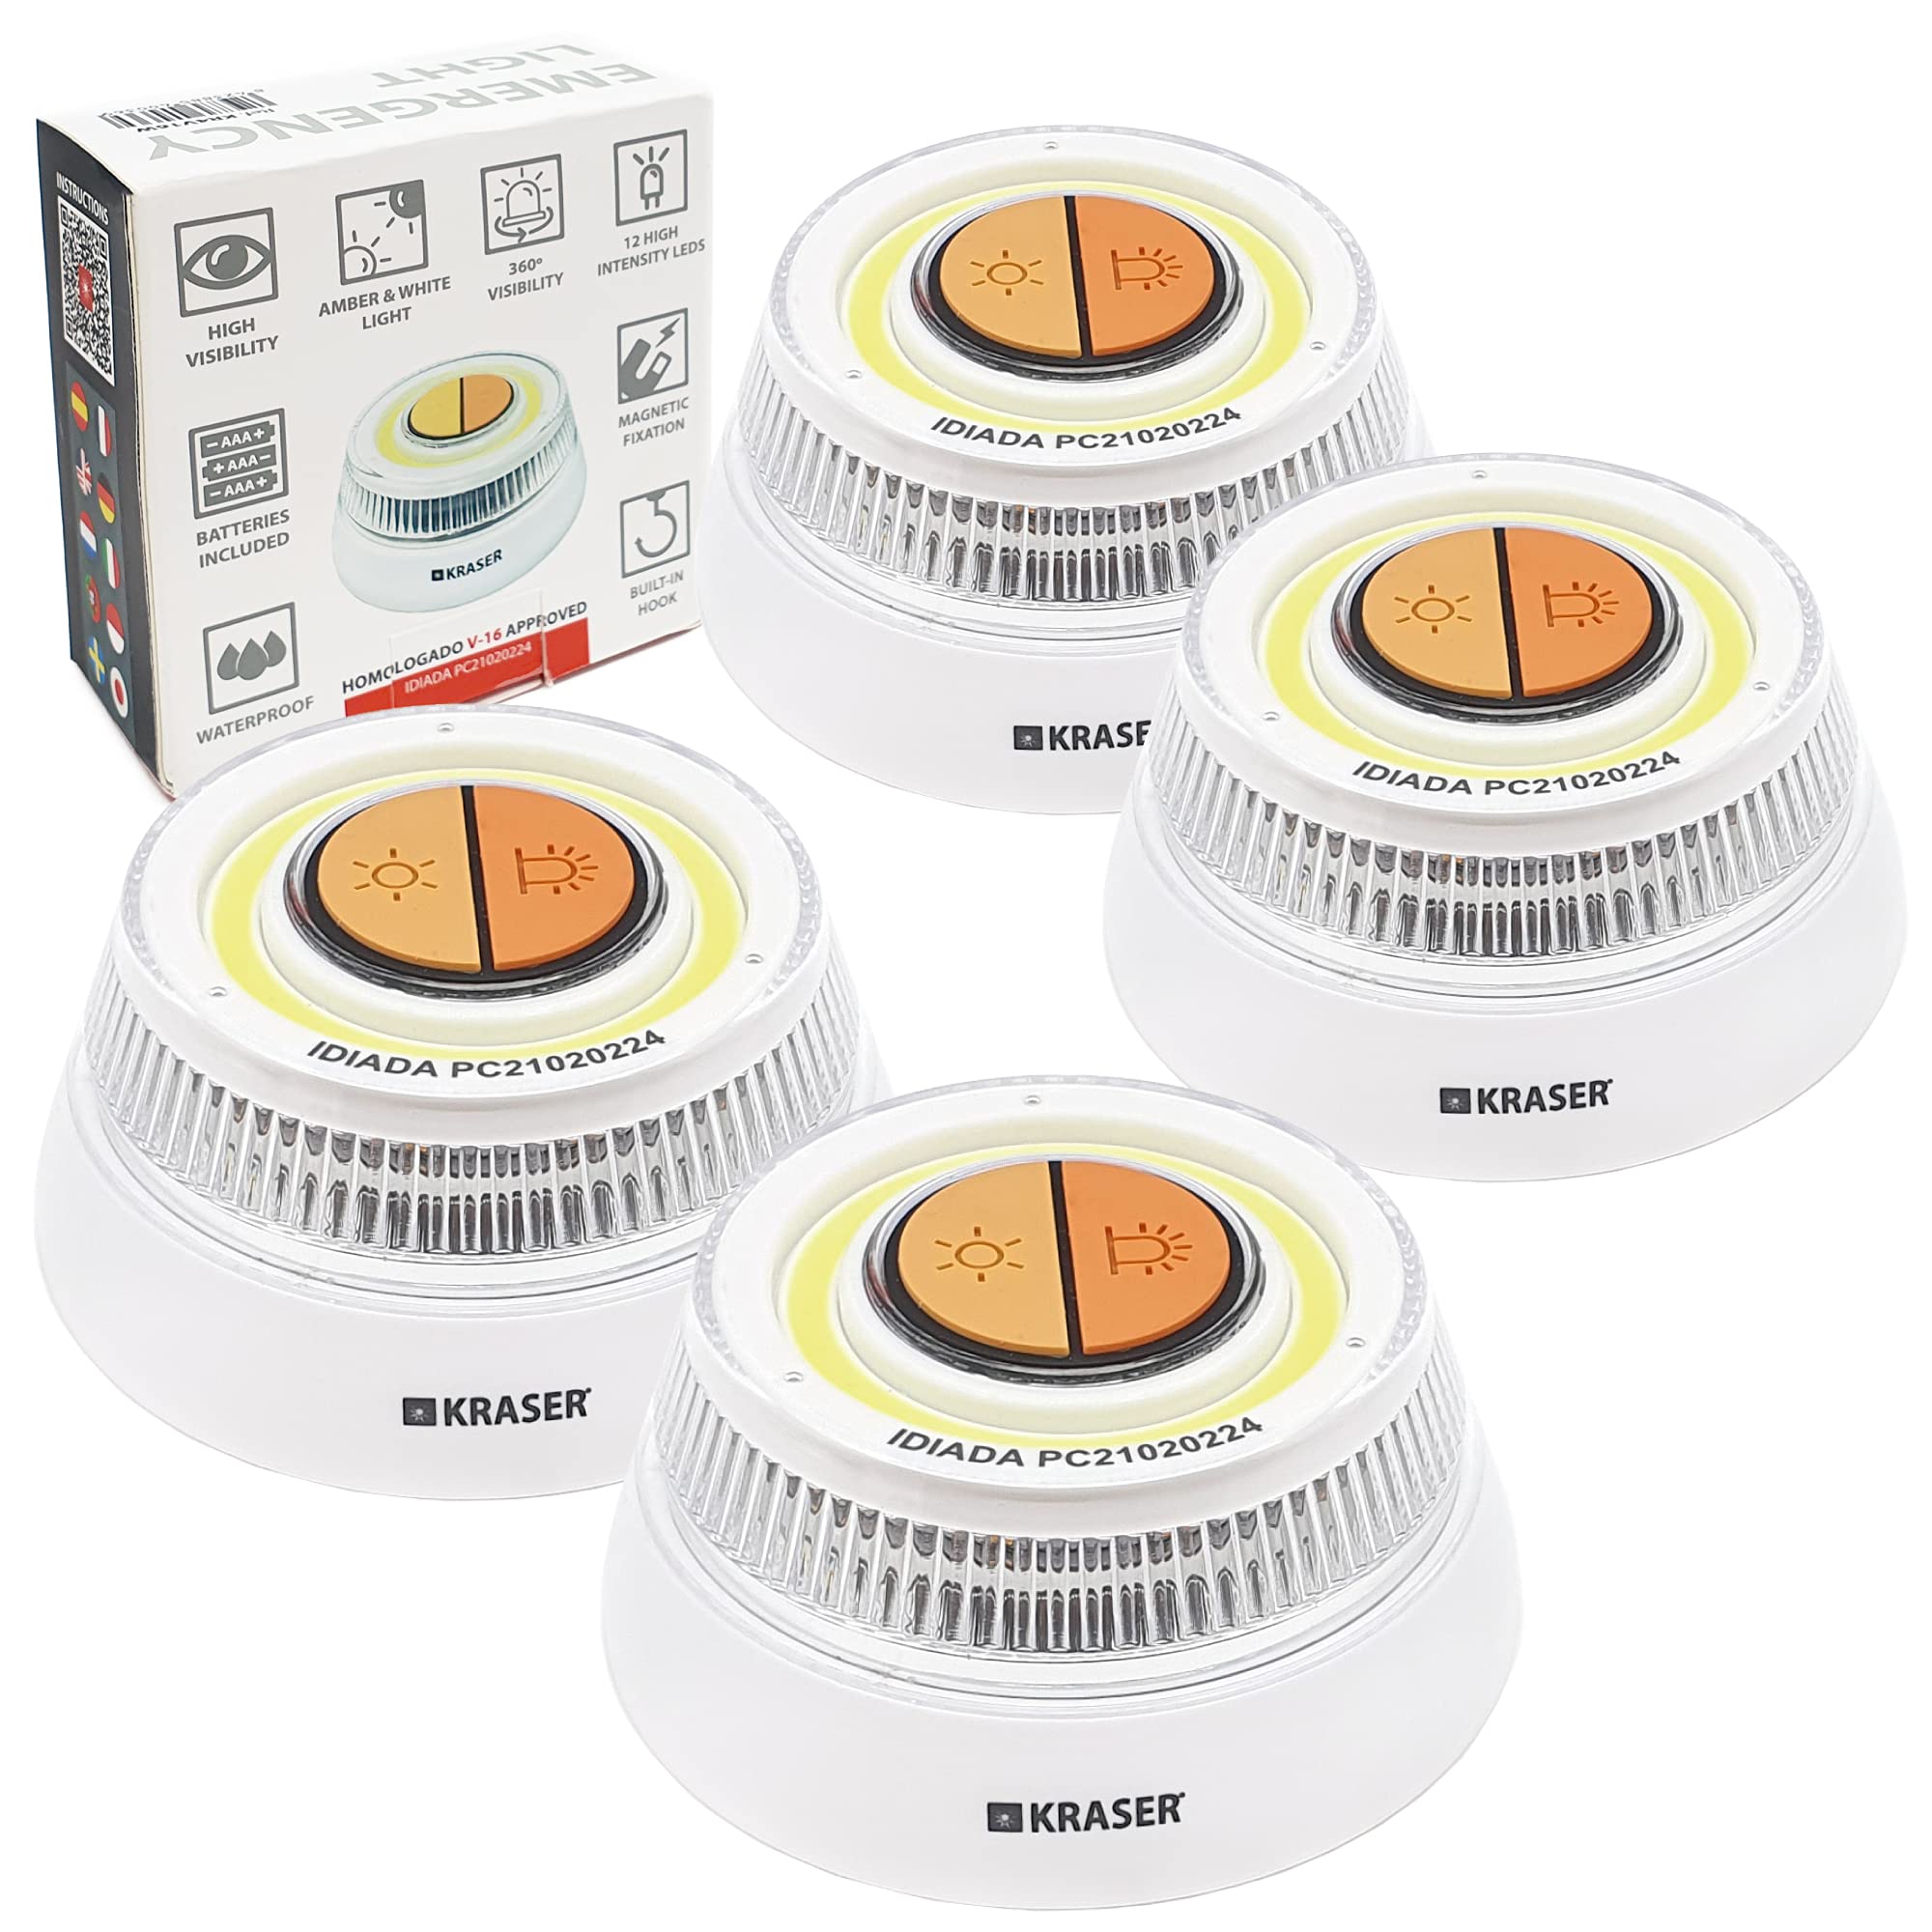 KRASER KR4V16WP4 Pack 4 LED-Licht für Auto-Straßen-Taschenlampe, orange und weiße Beleuchtung, magnetische Magnetbefestigung, Aufhänger, AAA-Batterien im Lieferumfang enthalten, Sicherheit